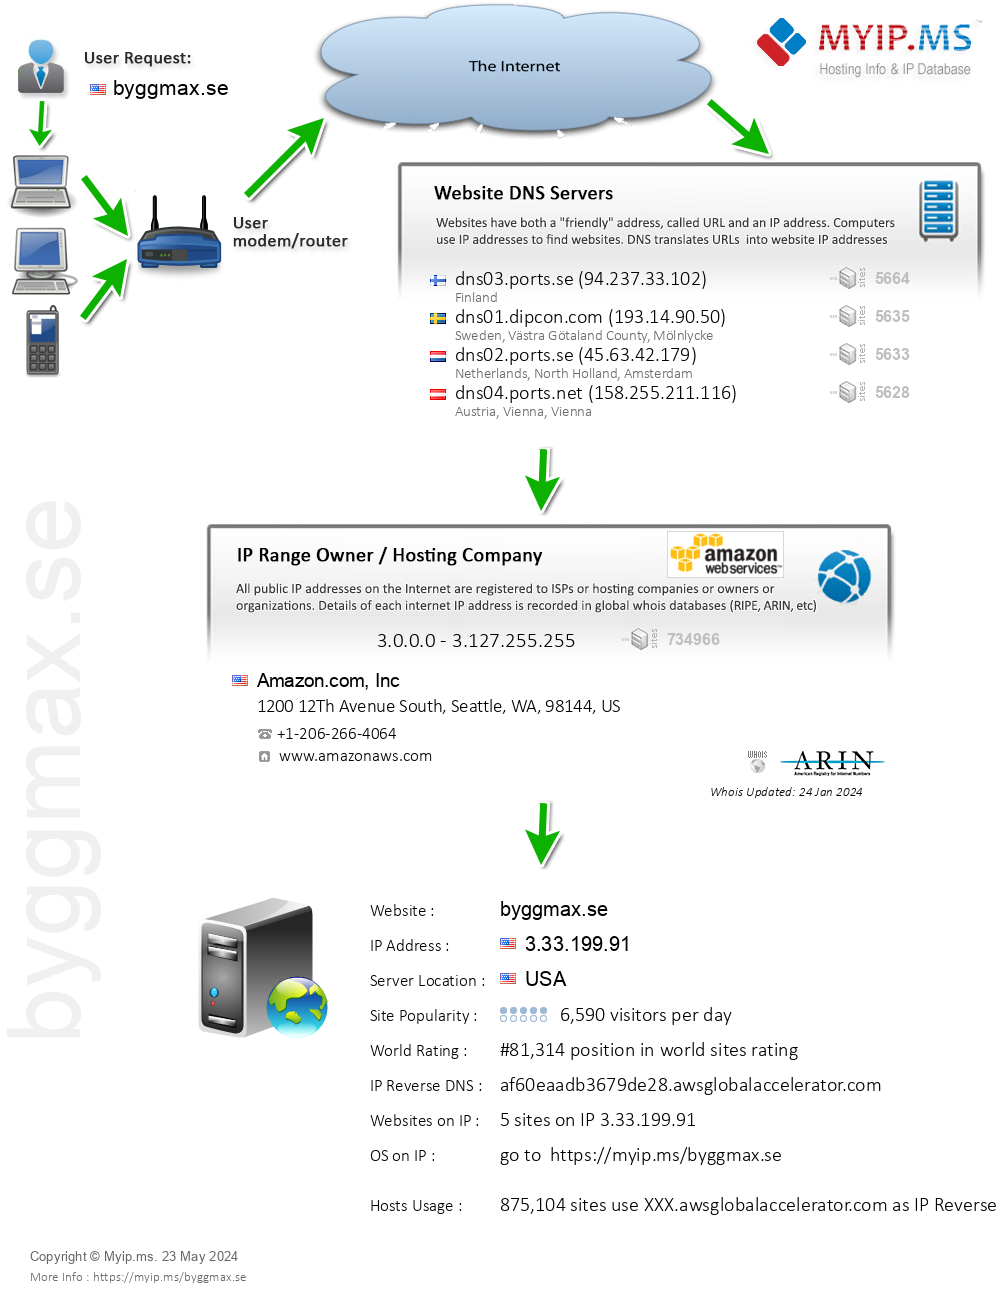 Byggmax.se - Website Hosting Visual IP Diagram